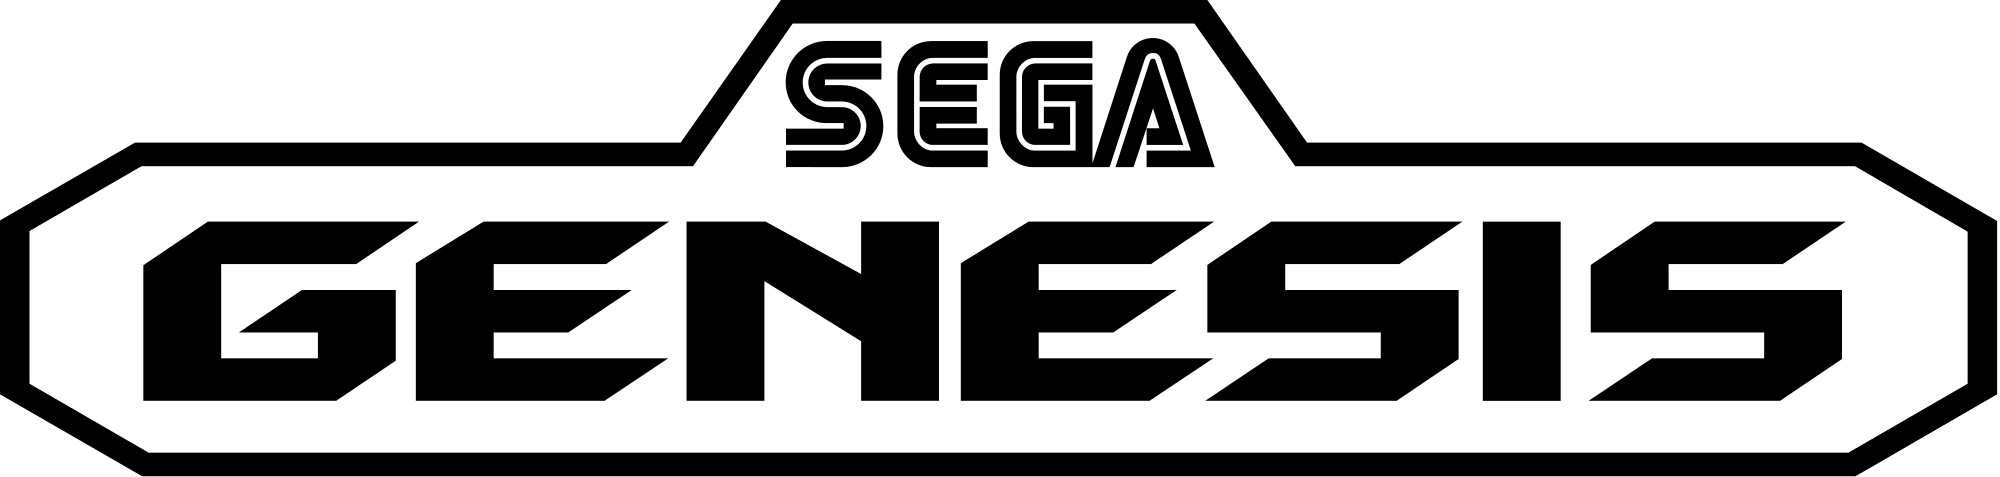 Sega Genesis Logo - File:Sega genesis logo.svg - Wikimedia Commons